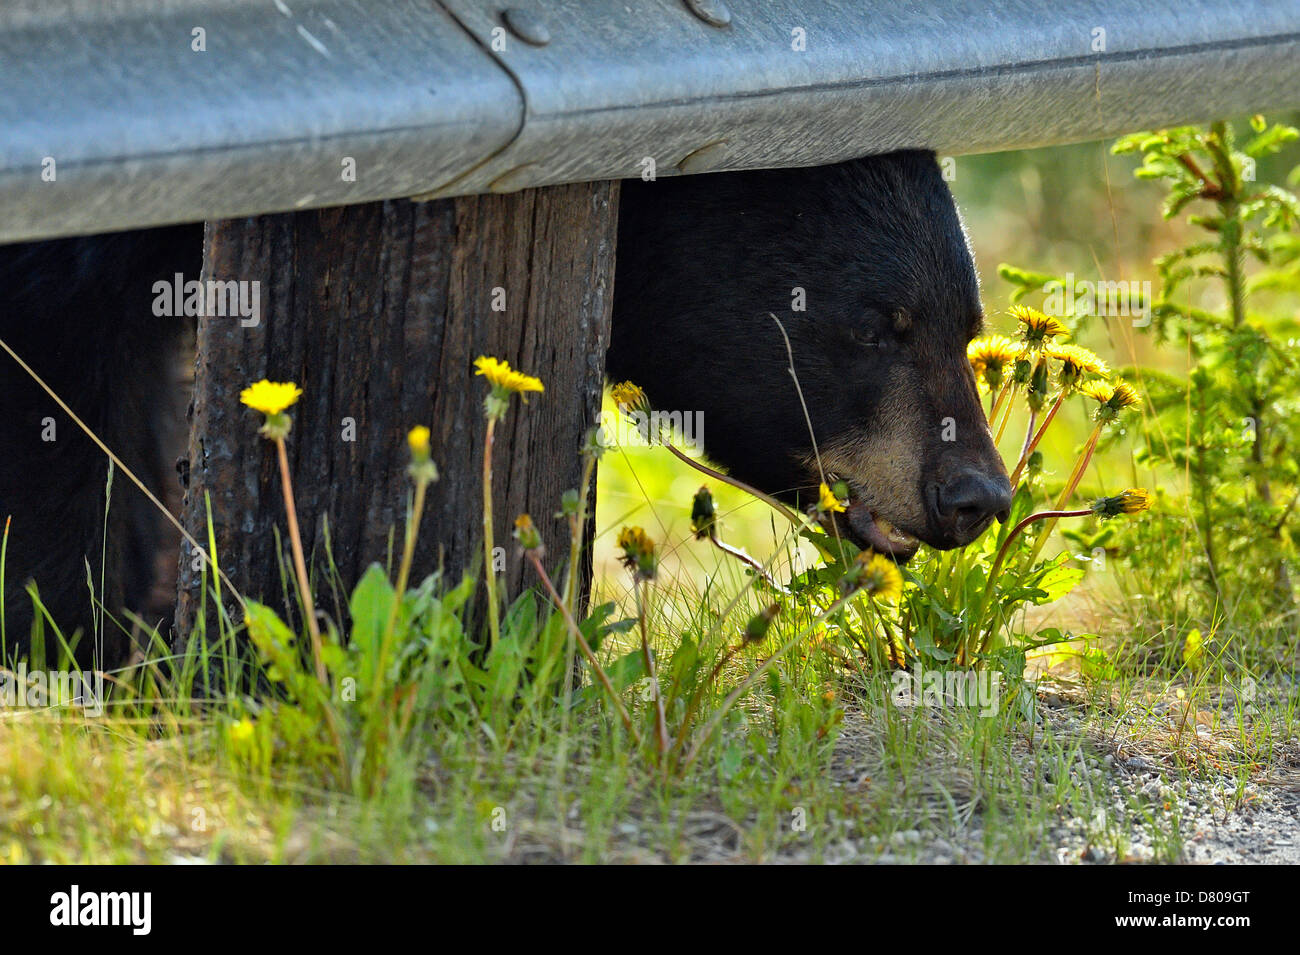 Ours noir, Ursus americanus, recherche de plantes en bordure du Parc National de Jasper, Alberta, Canada Banque D'Images